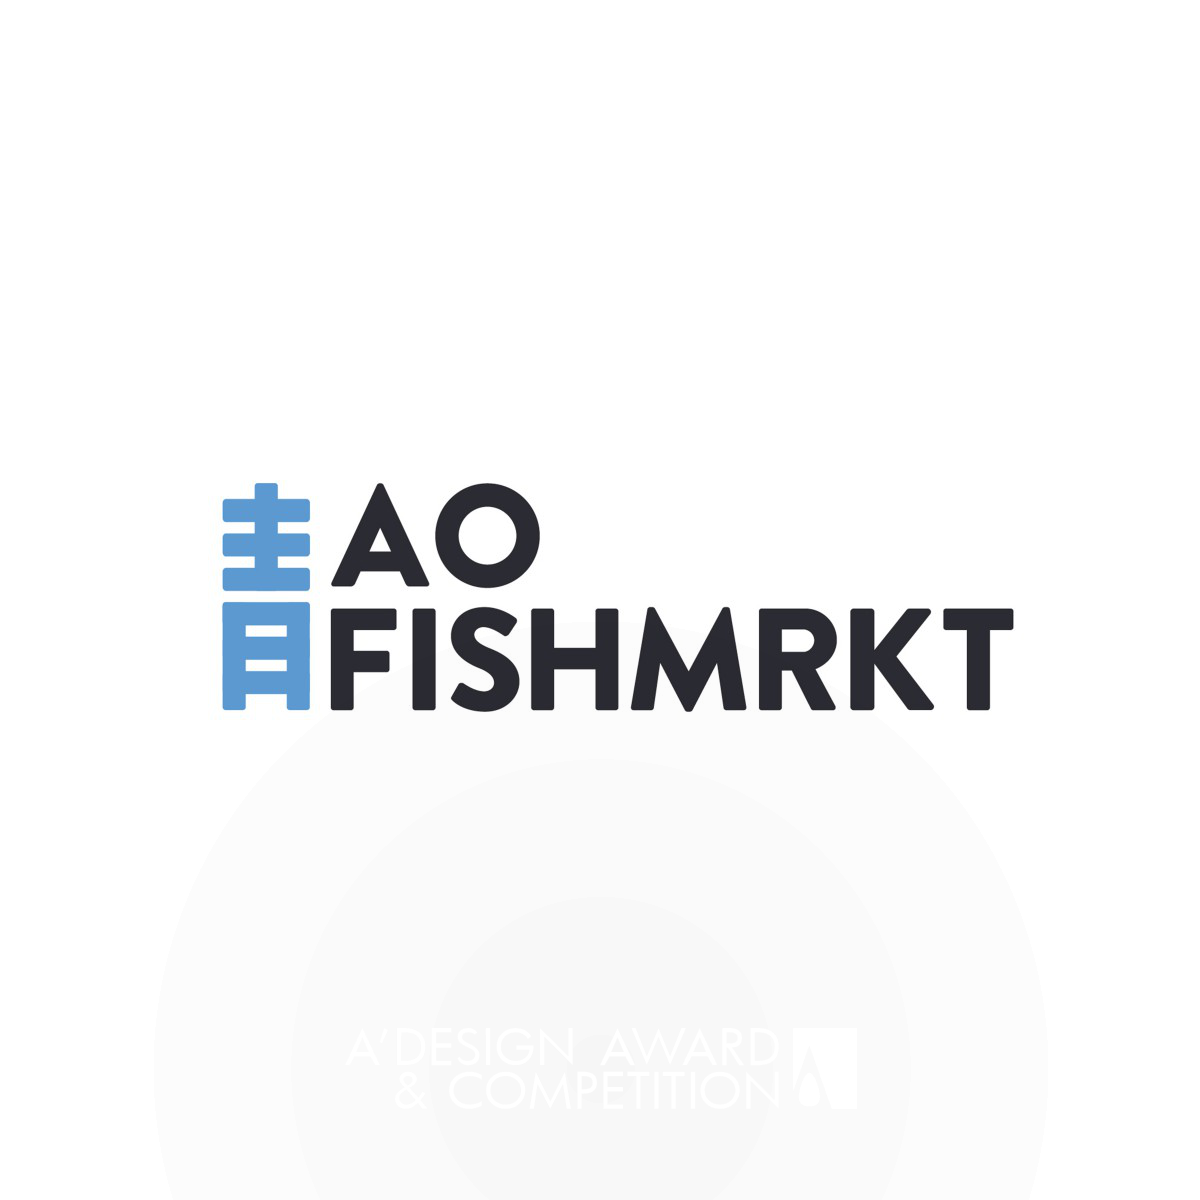 AO FISH MARKET Corporate Identity